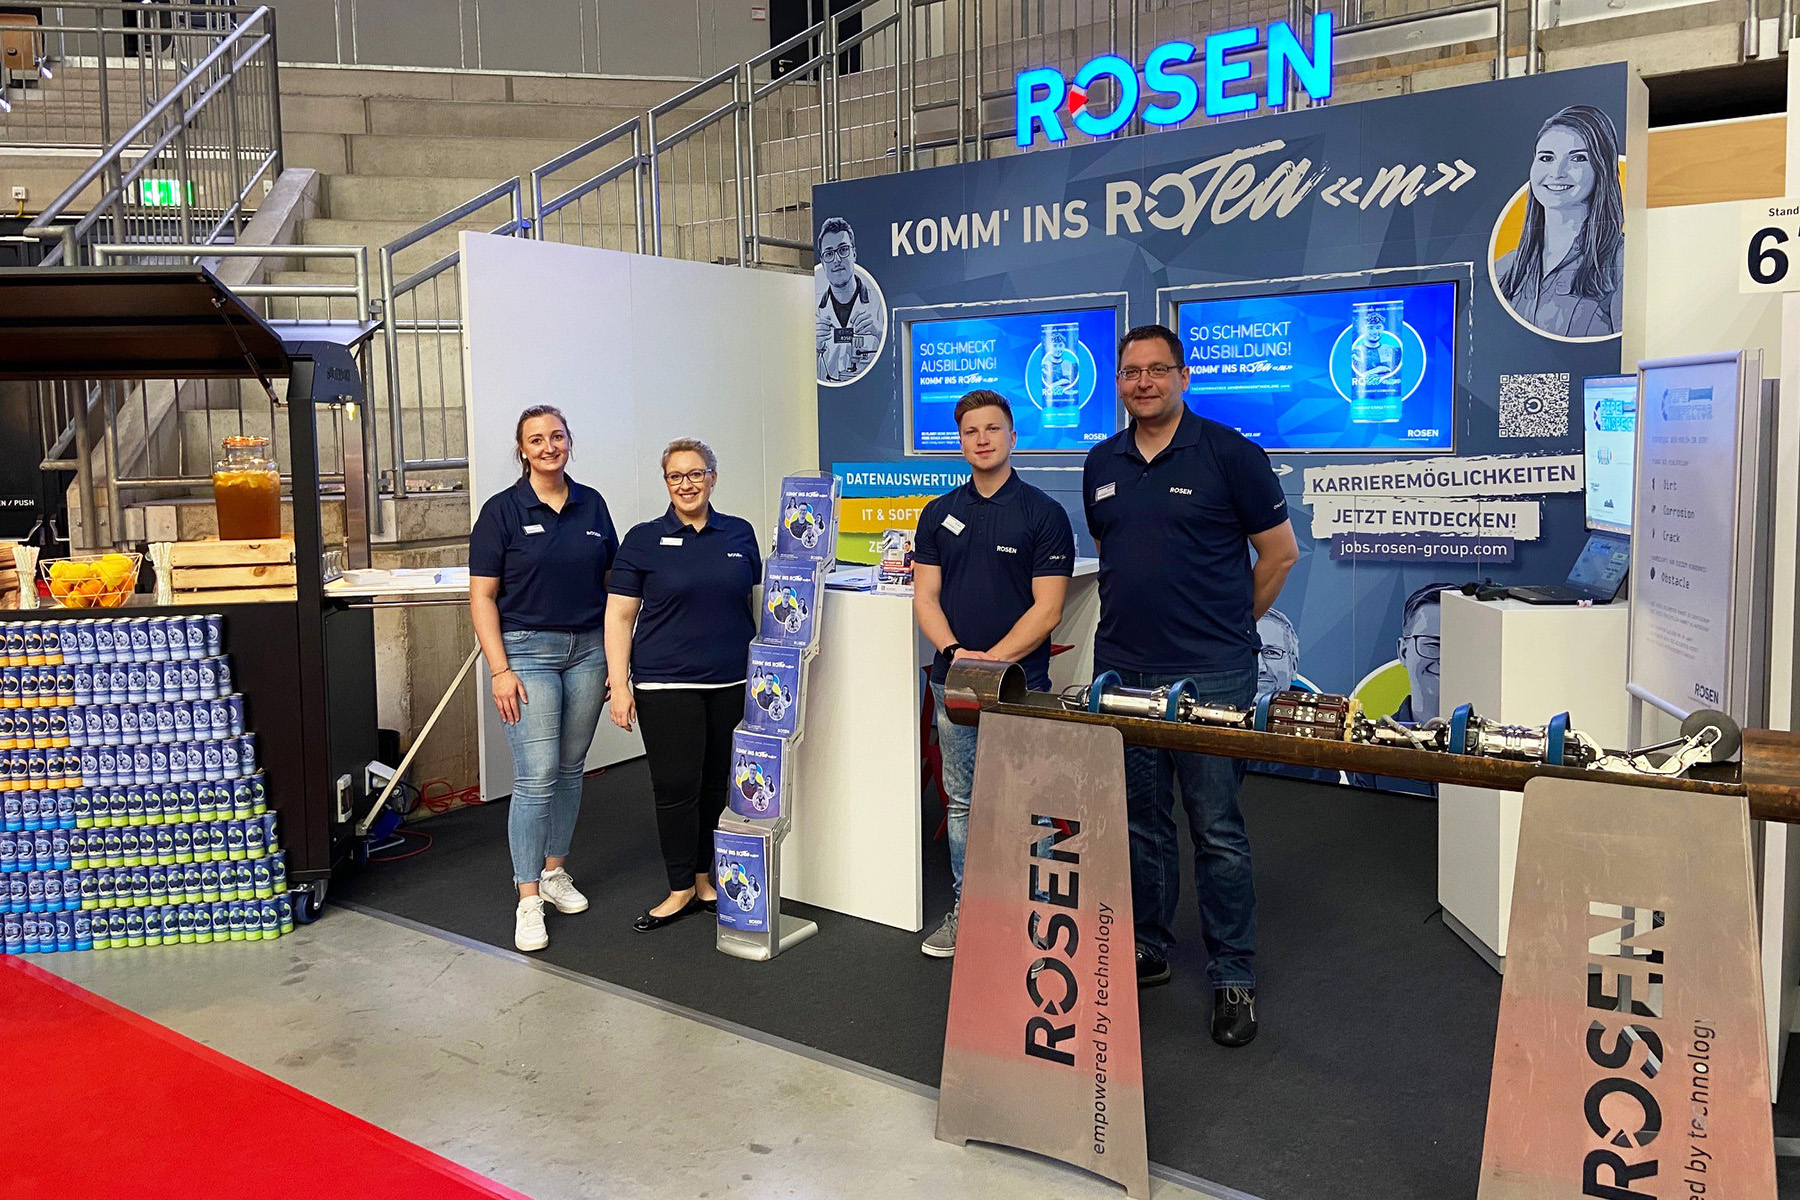 ROSEN war auf der Jobmesse Emsland vertreten - mit erfrischenden Karrieremöglichkeiten im Gepäck.